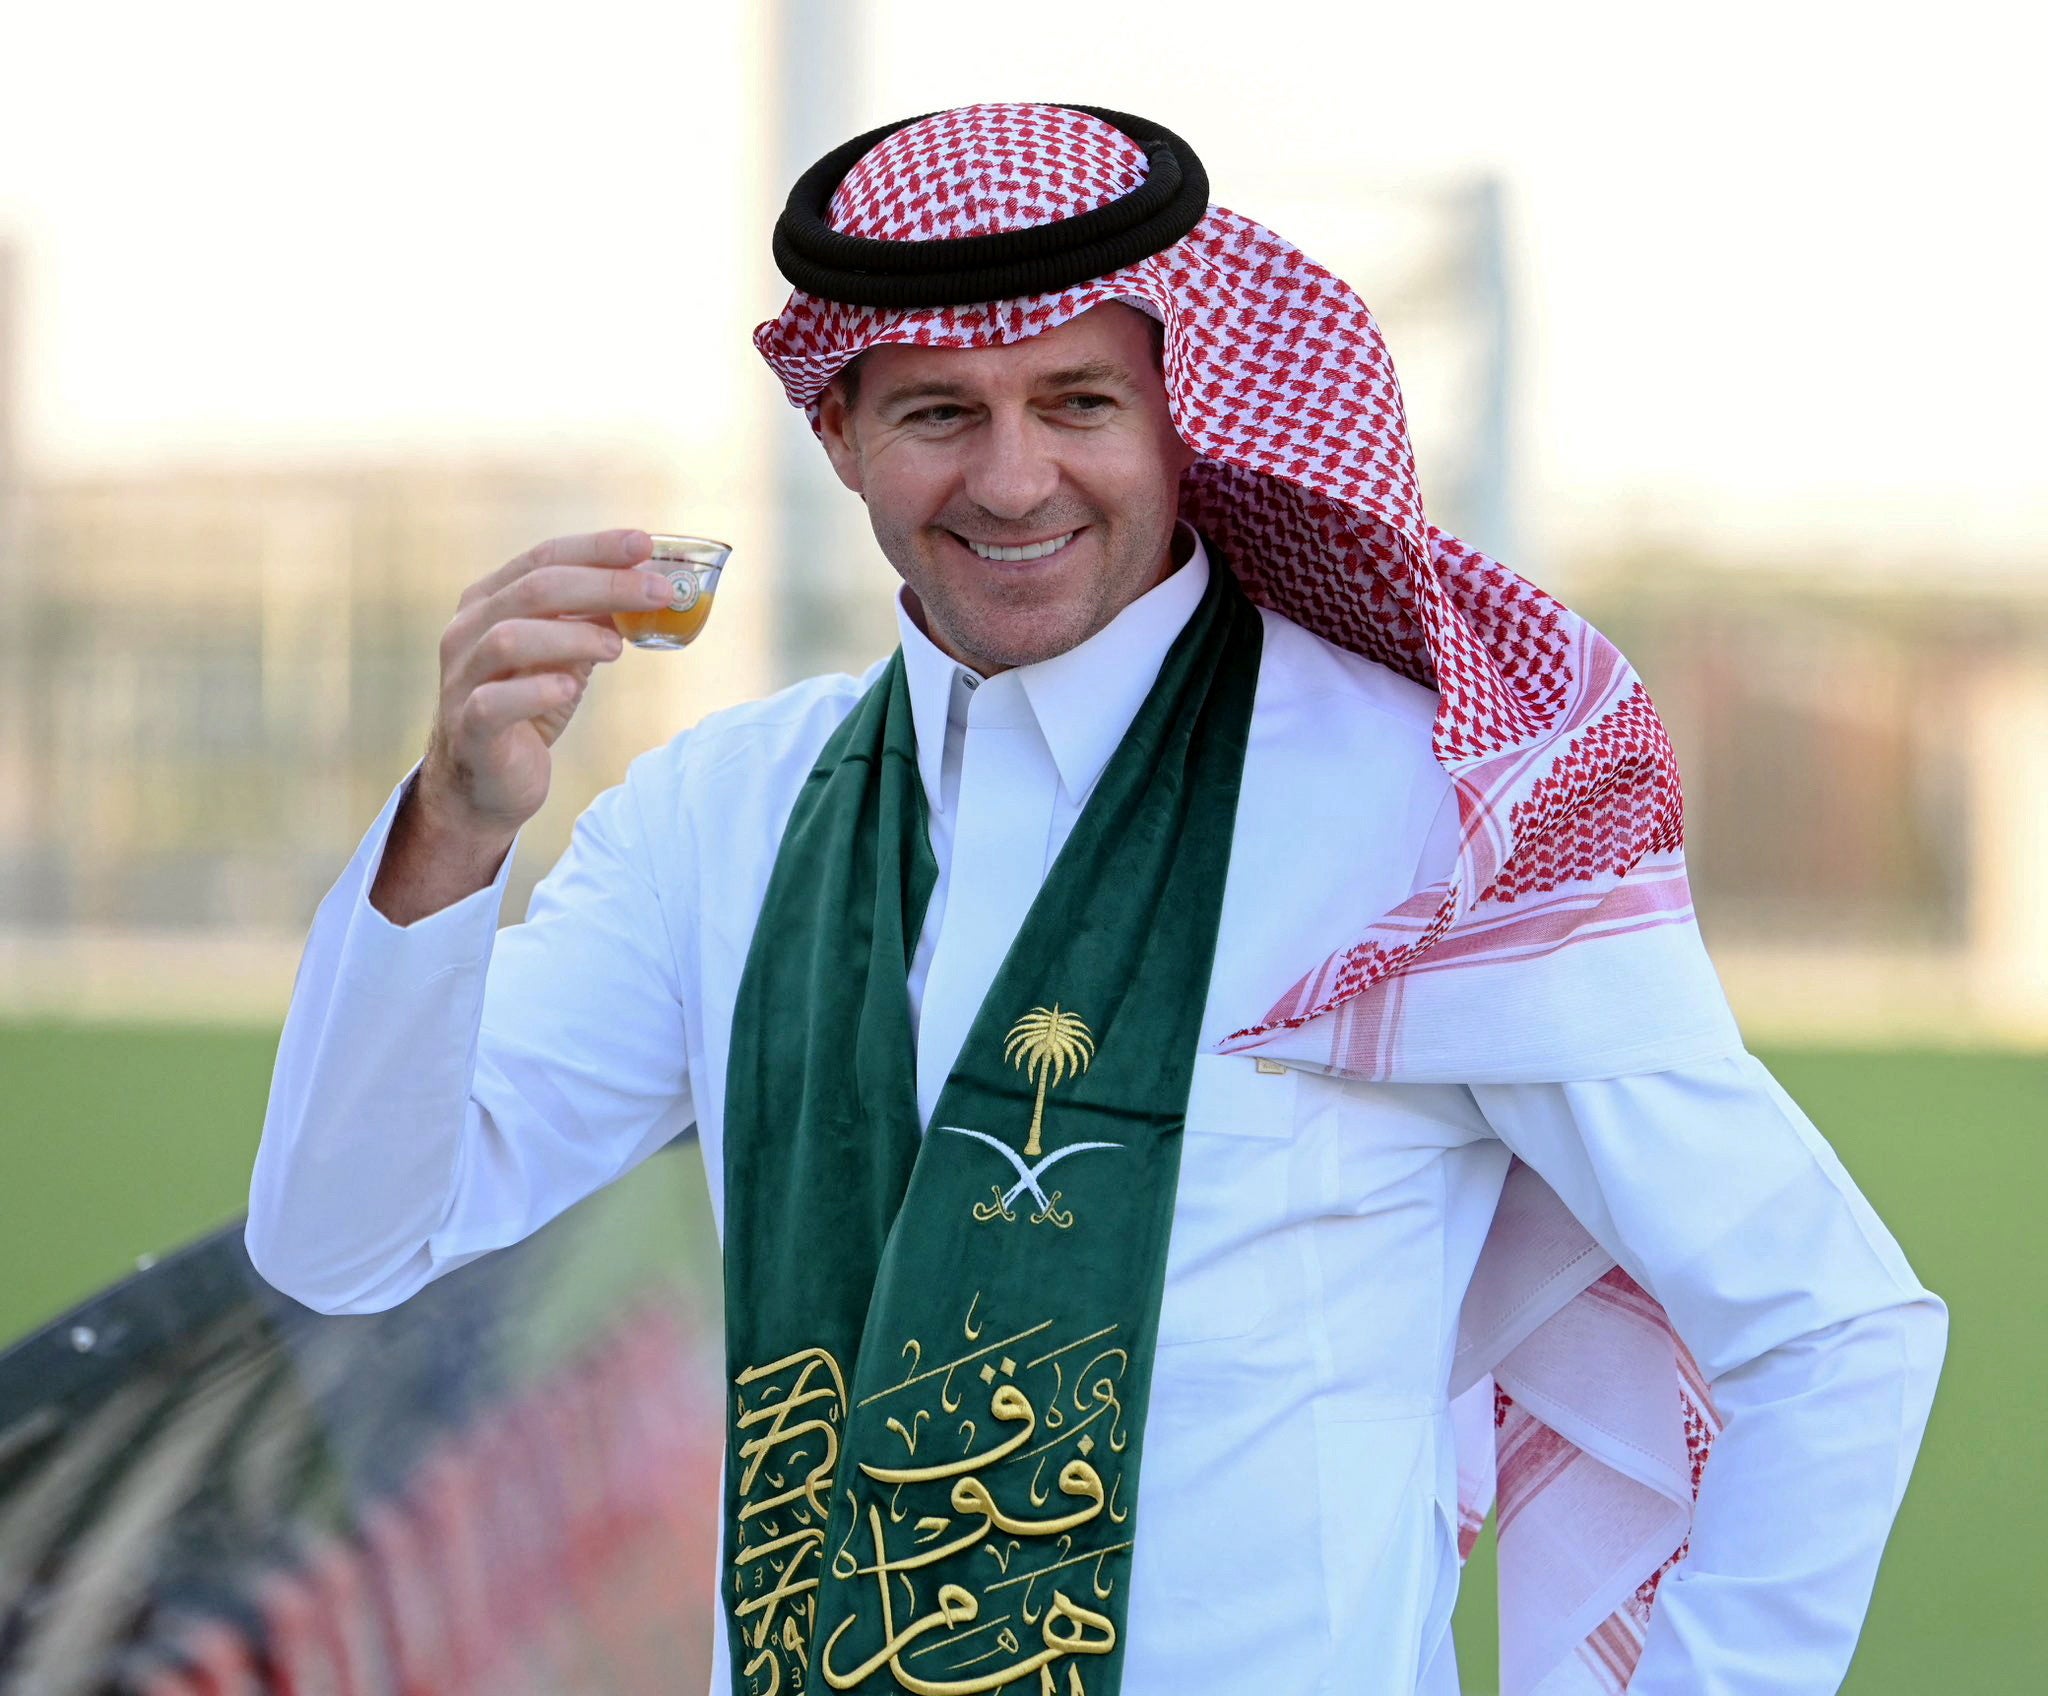 Steven Gerrard celebrating Saudi National Day